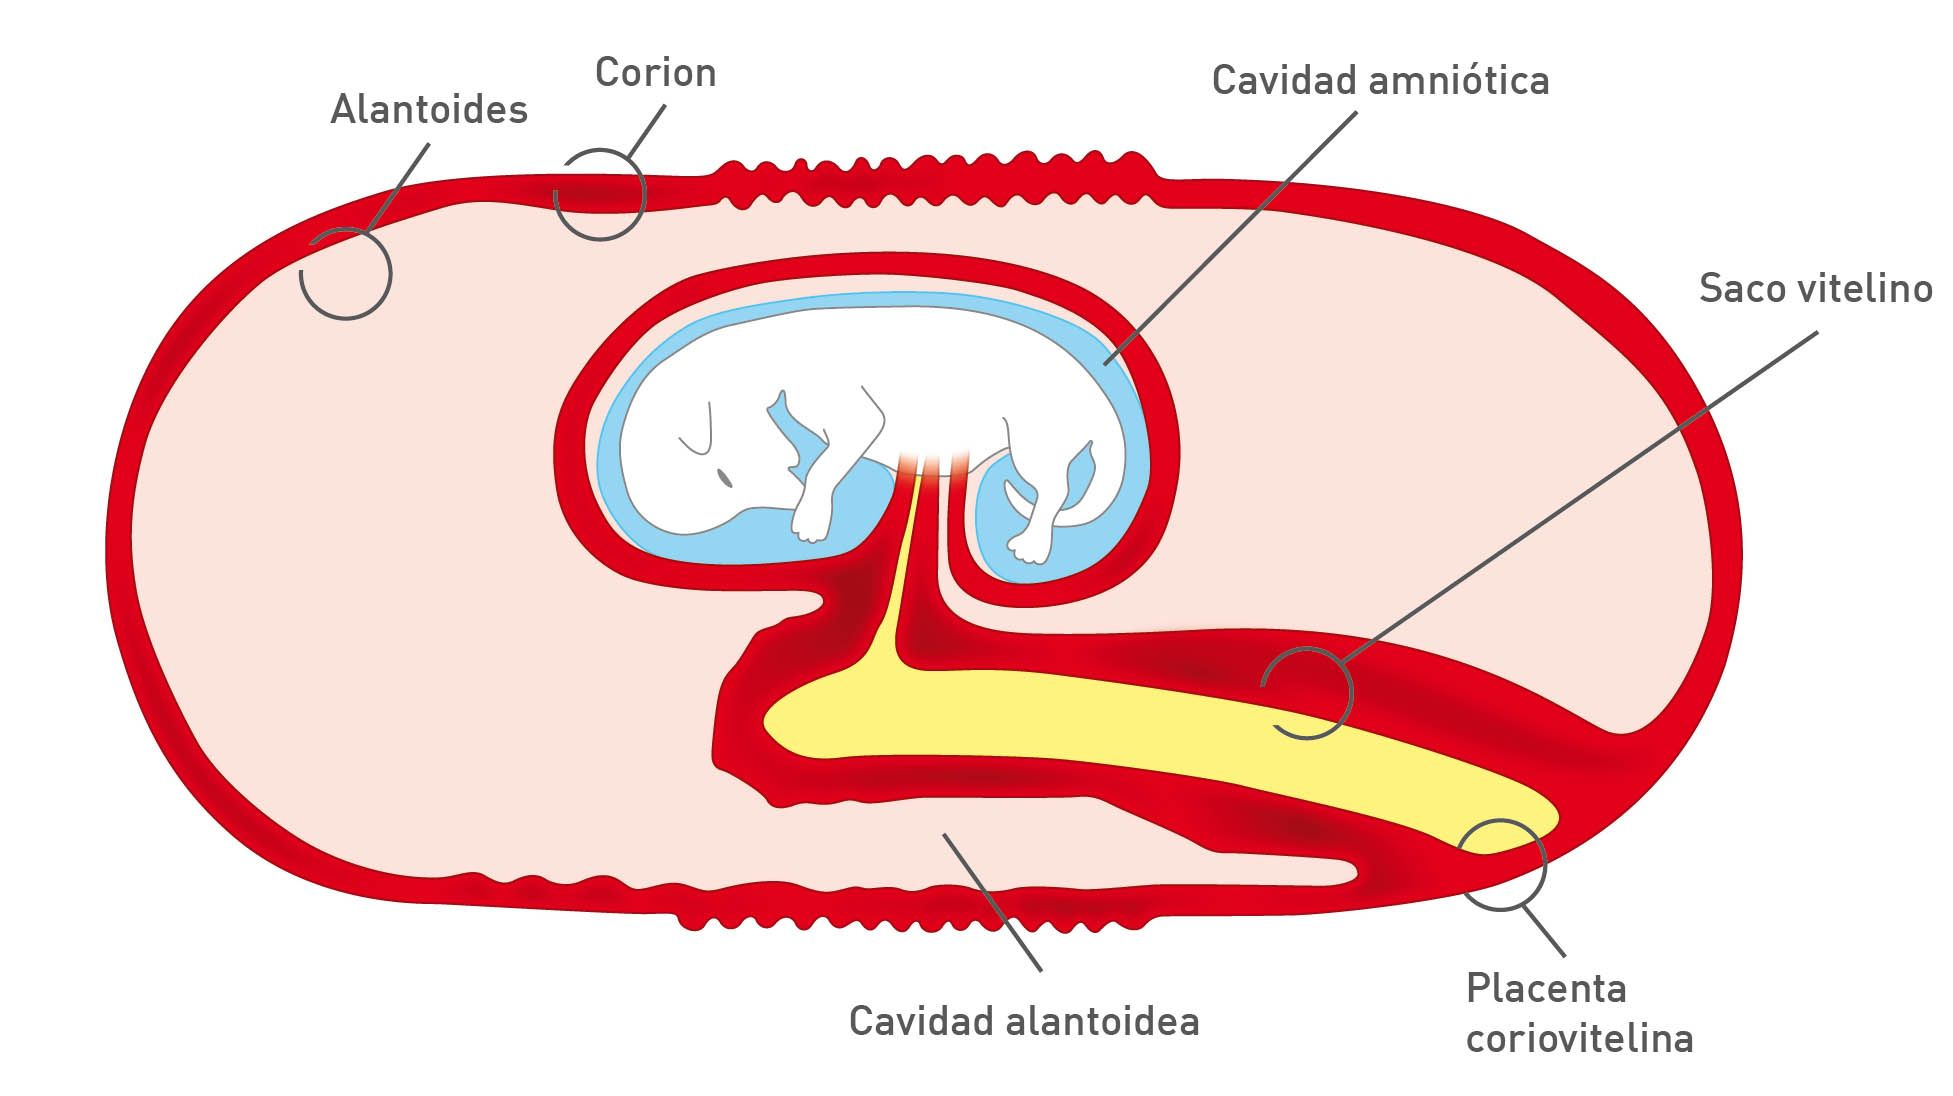 Dibujo esquemático de la estructura de placenta canina en la gestación avanzada